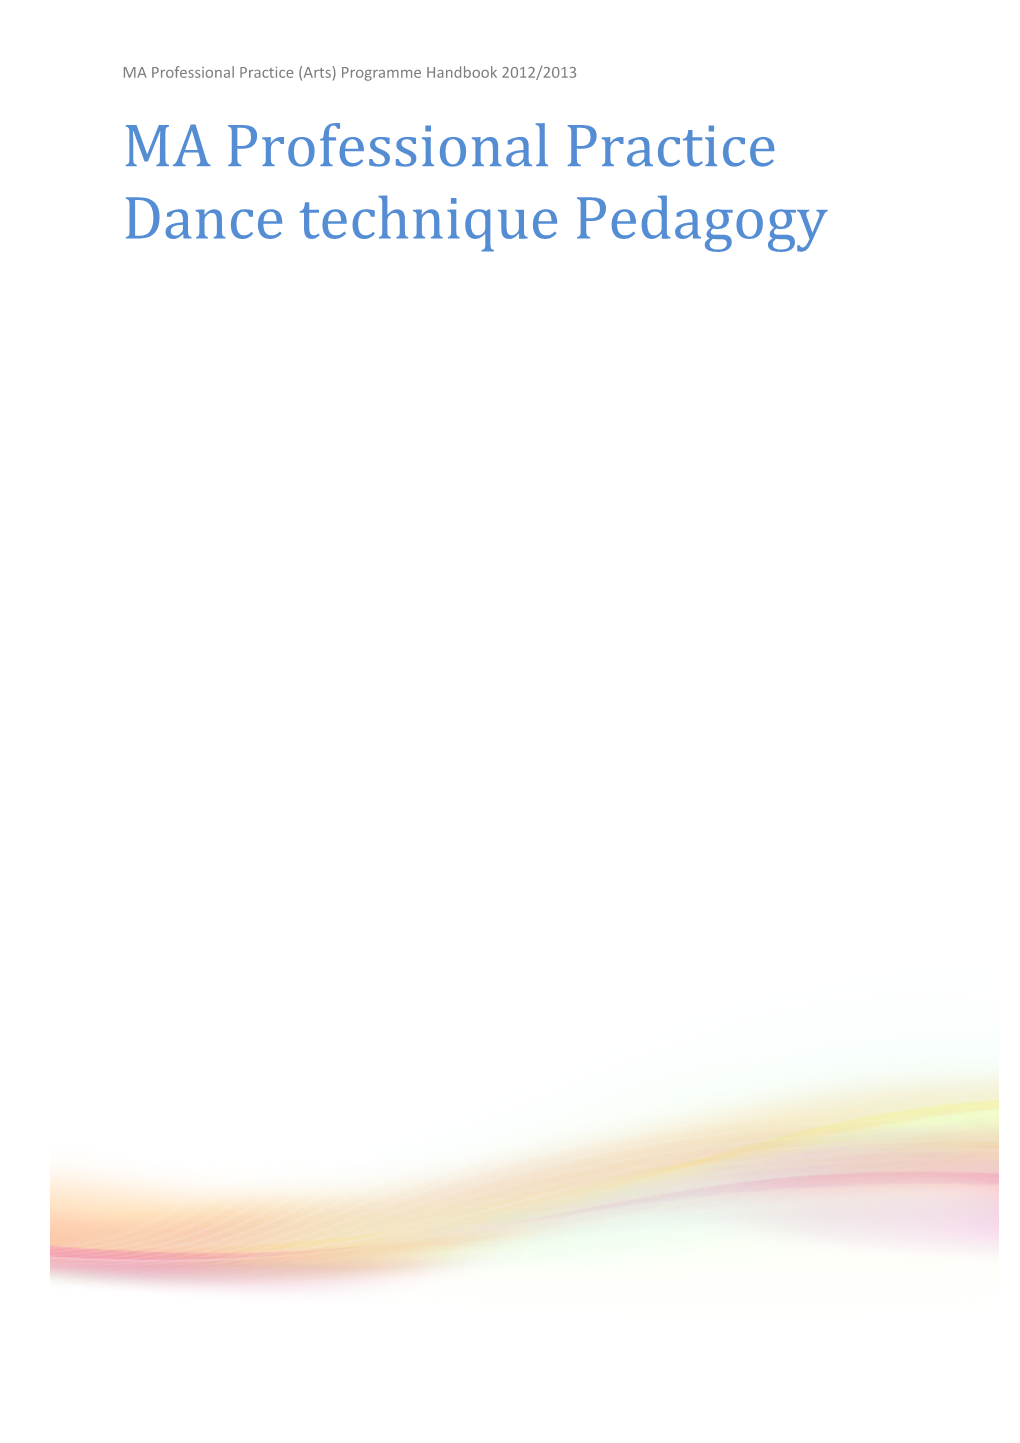 MA Professional Practice Dance Technique Pedagogy